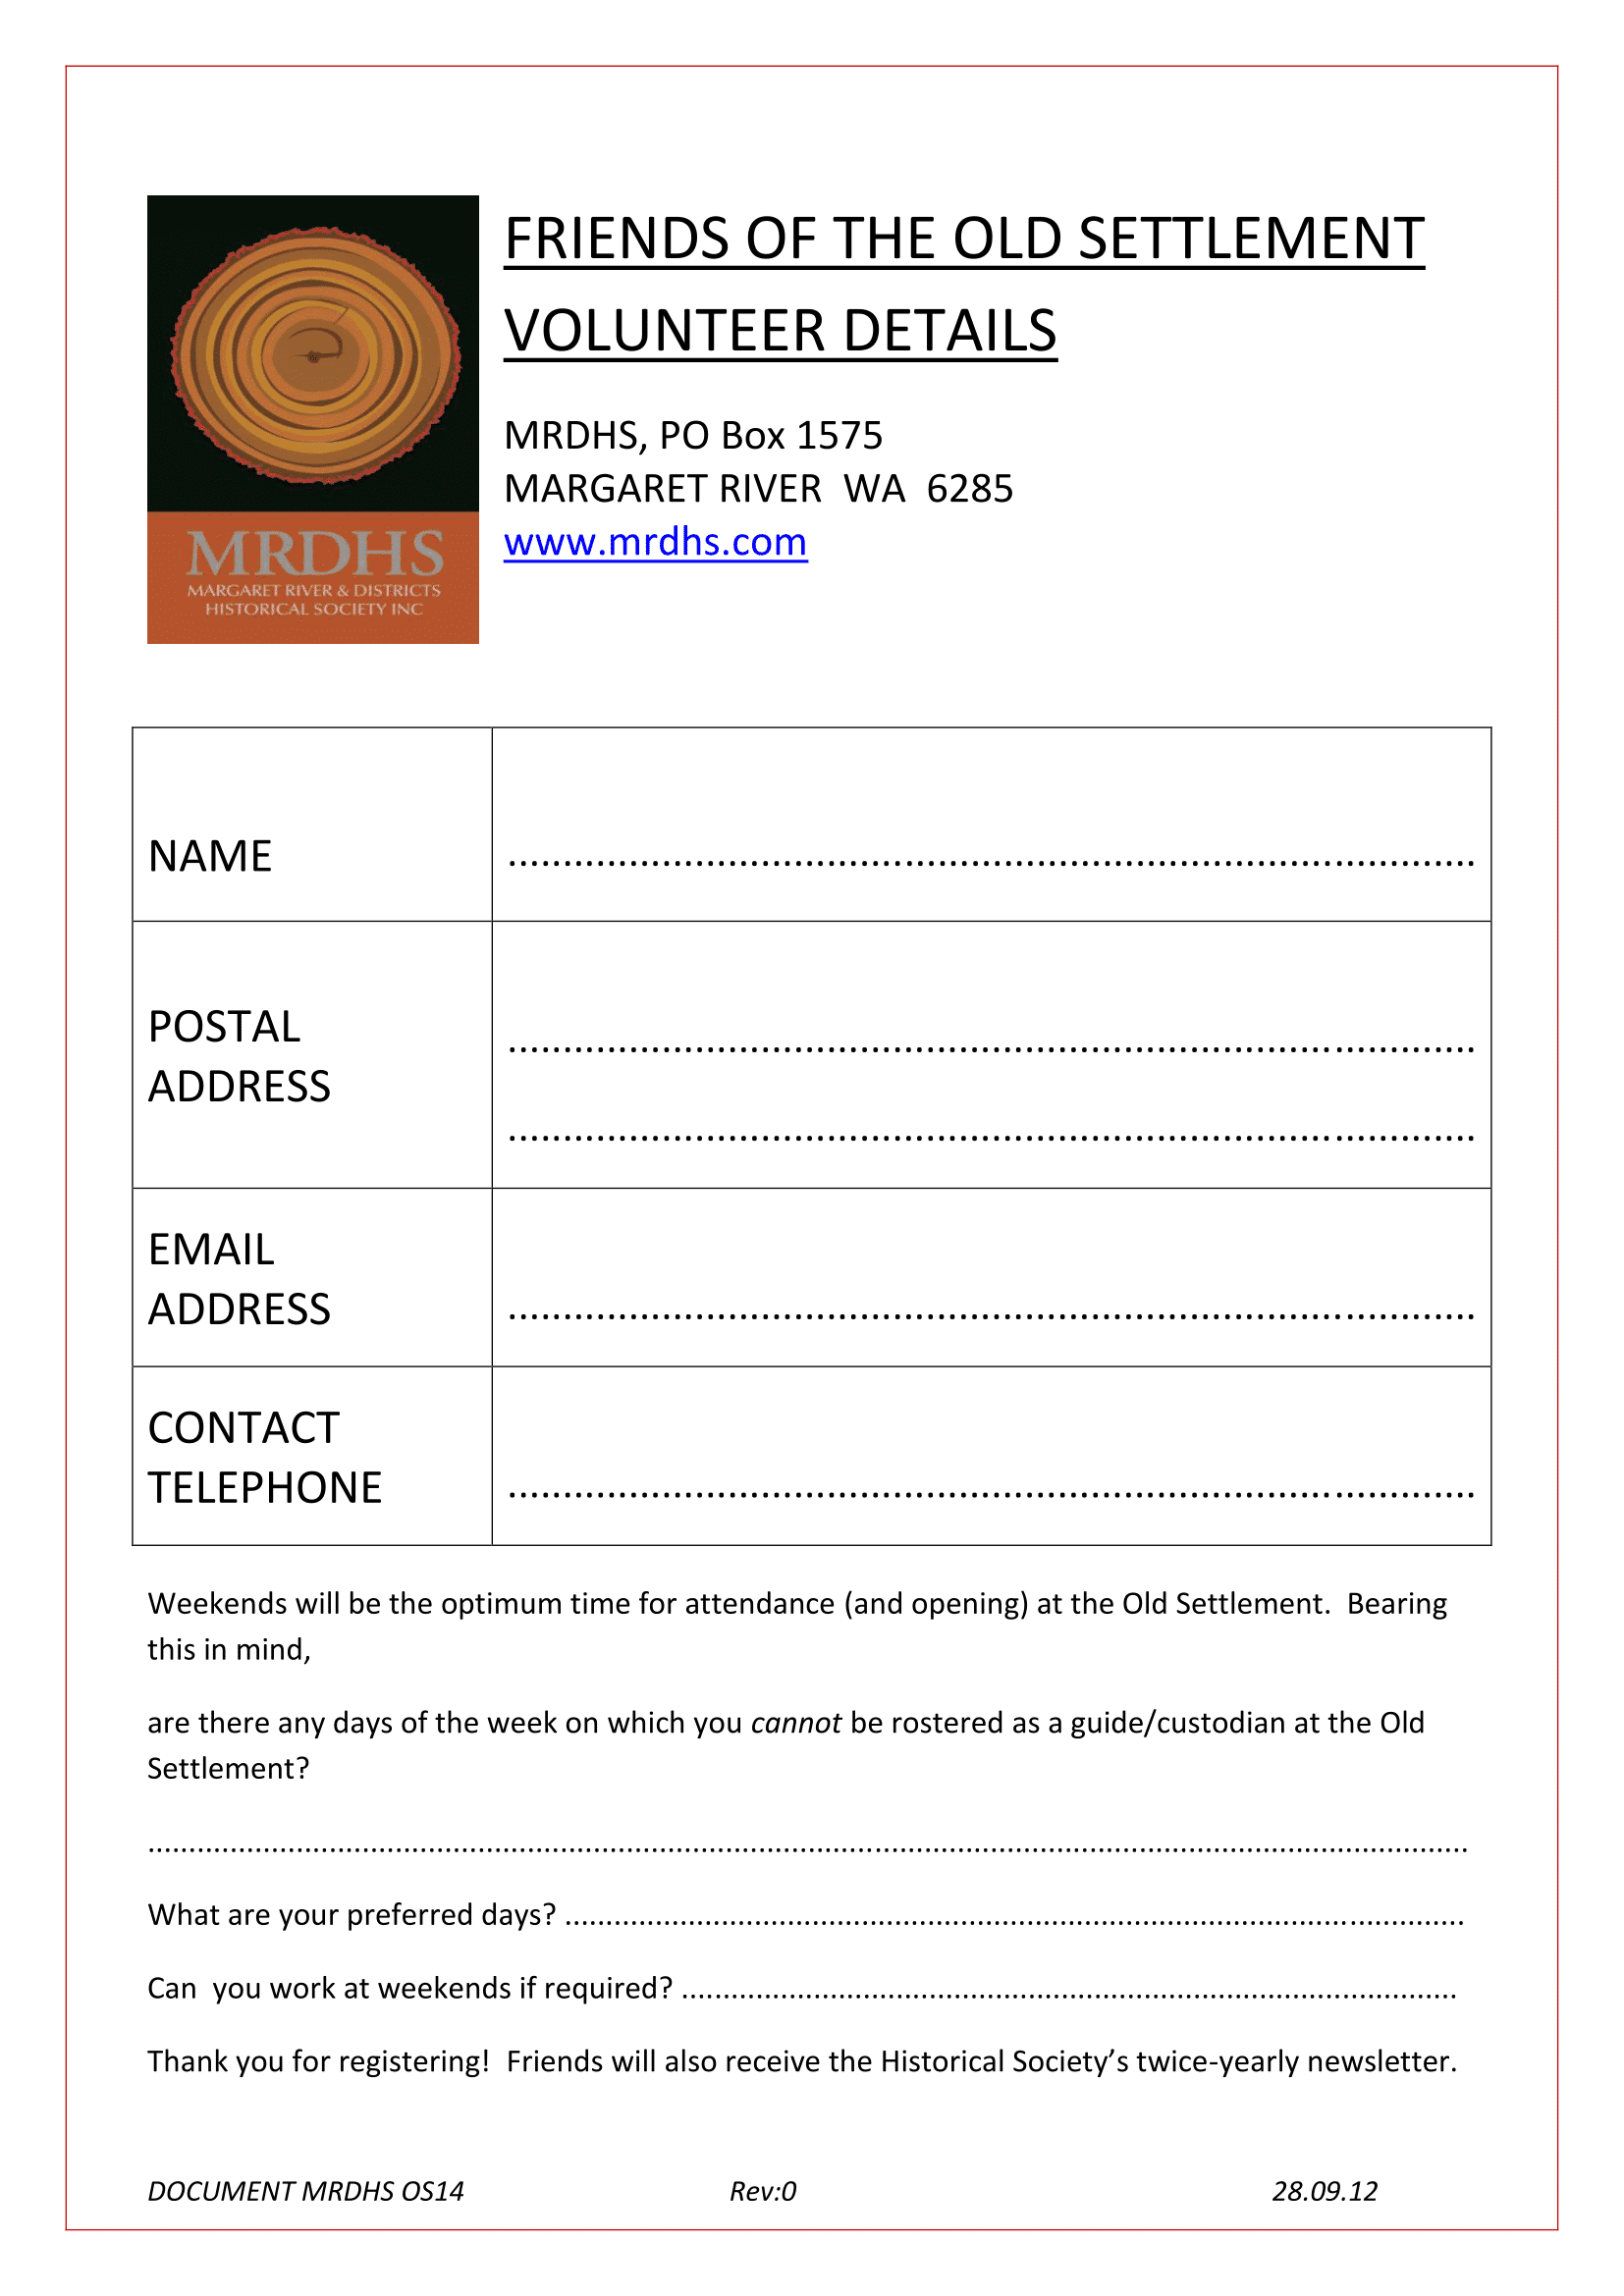 Volunteer details form (PDF document)